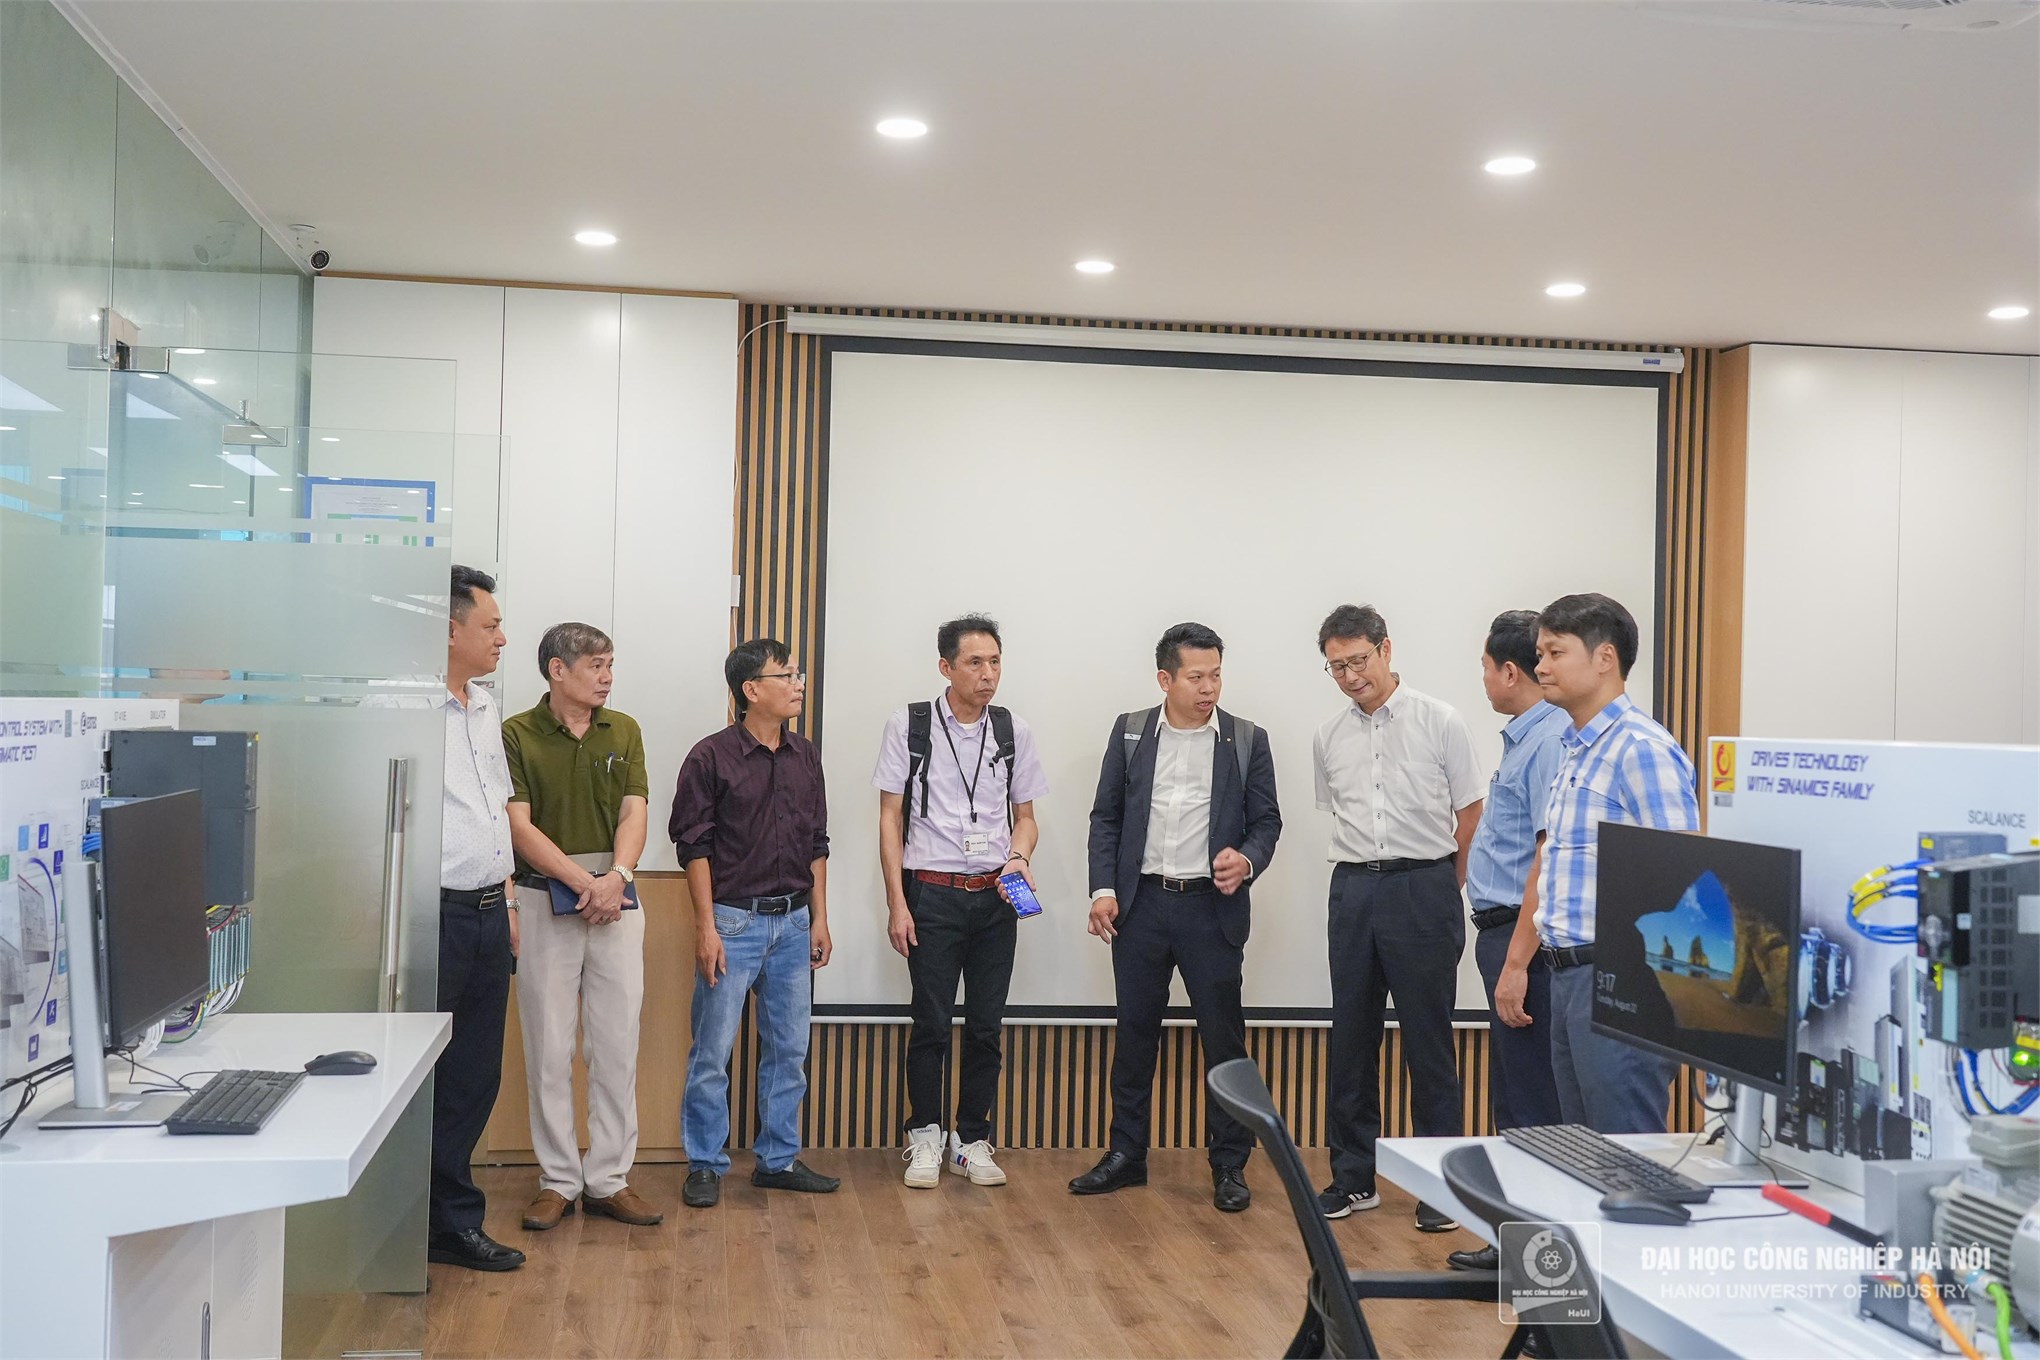 Trường Đại học Công nghiệp Hà Nội mở rộng hợp tác đào tạo, phát triển nhân lực với Tập đoàn Mazda